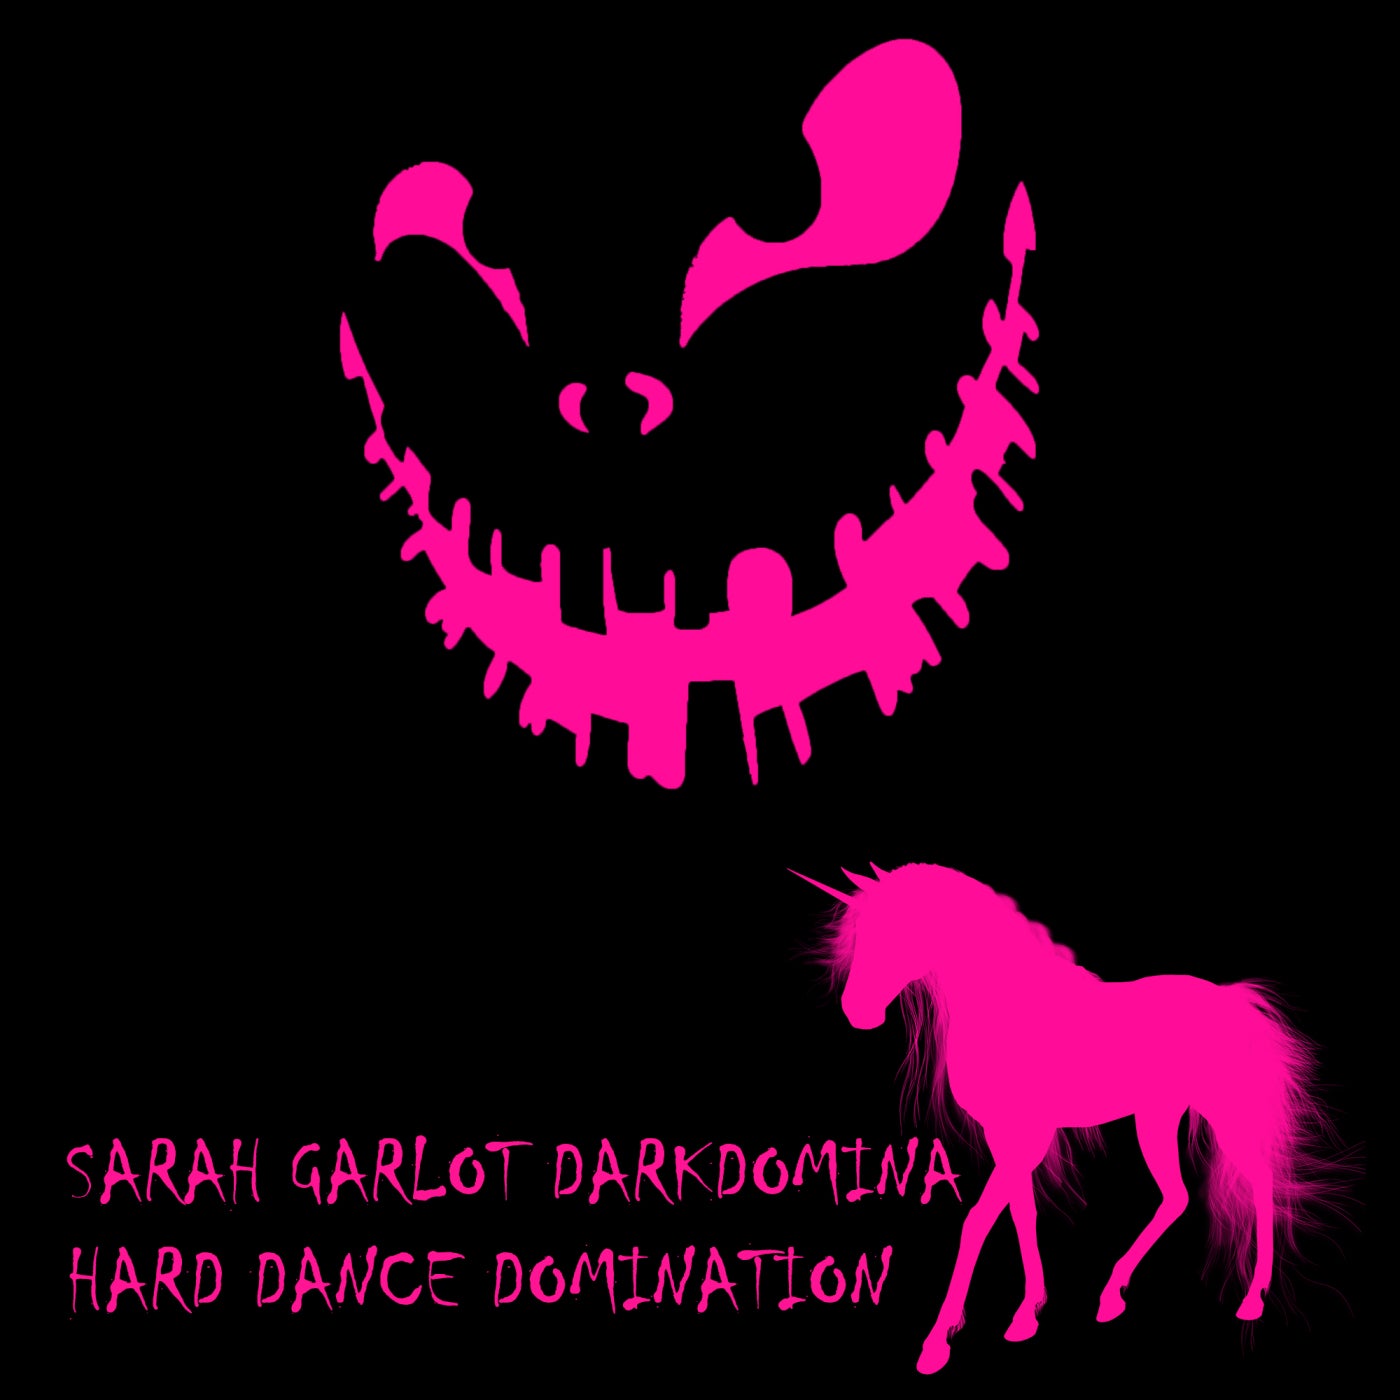 Hard Dance Domination